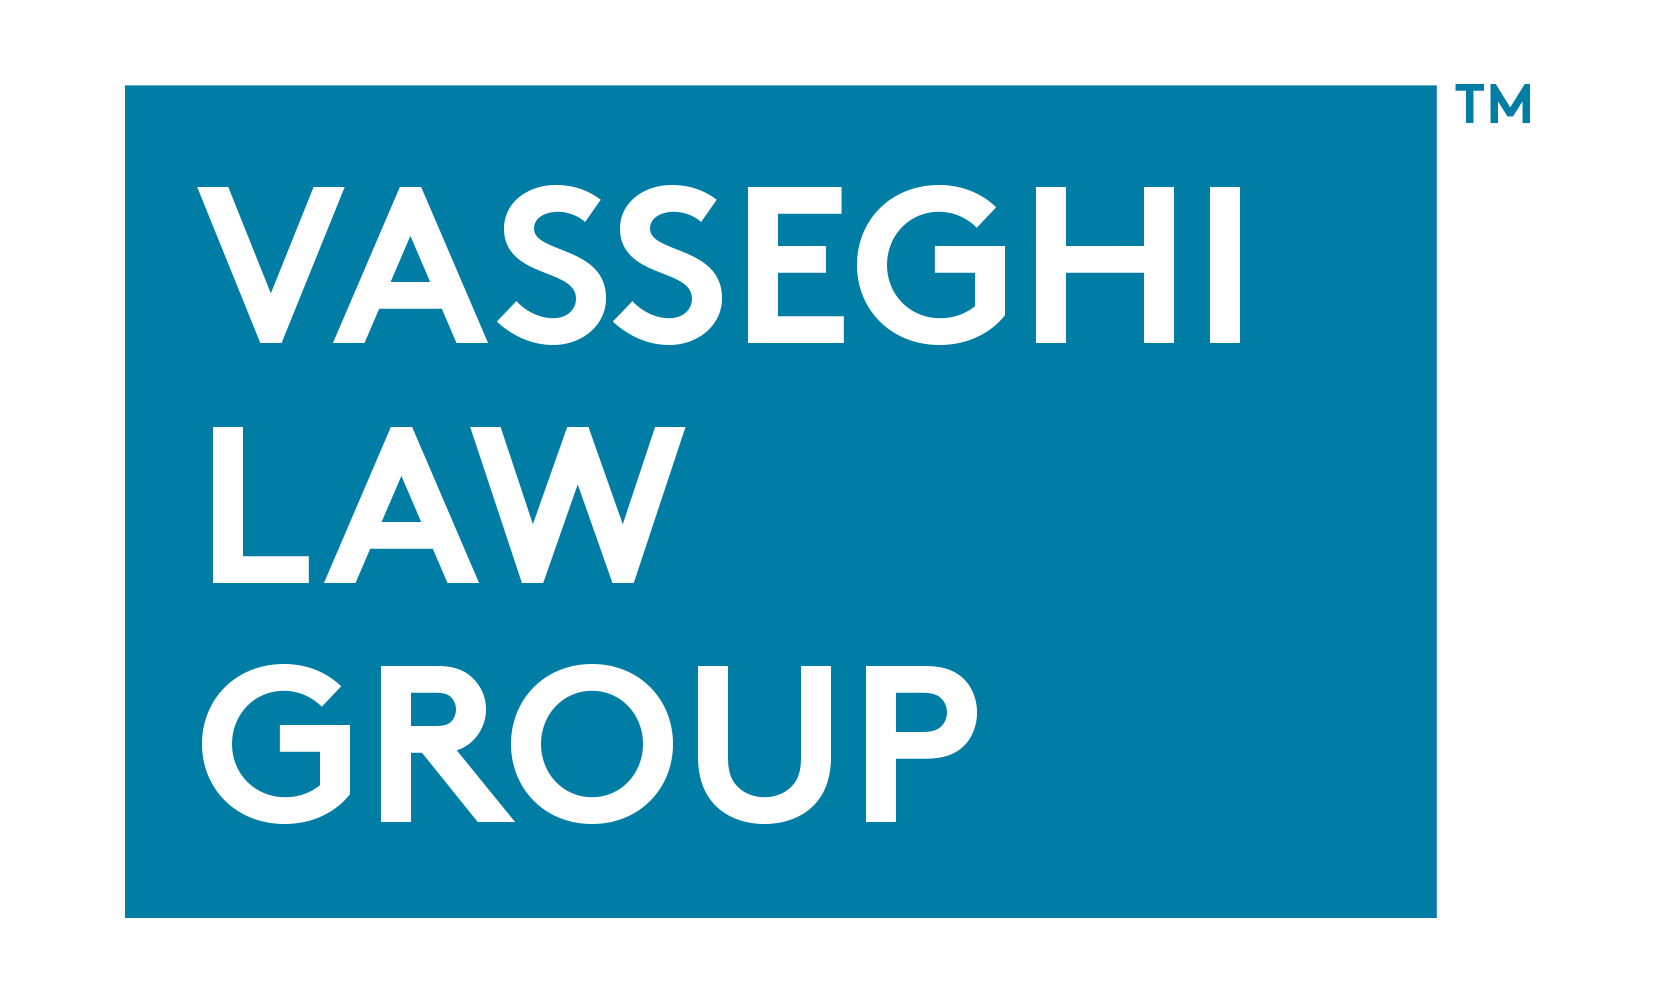 Vasseghi Law Group